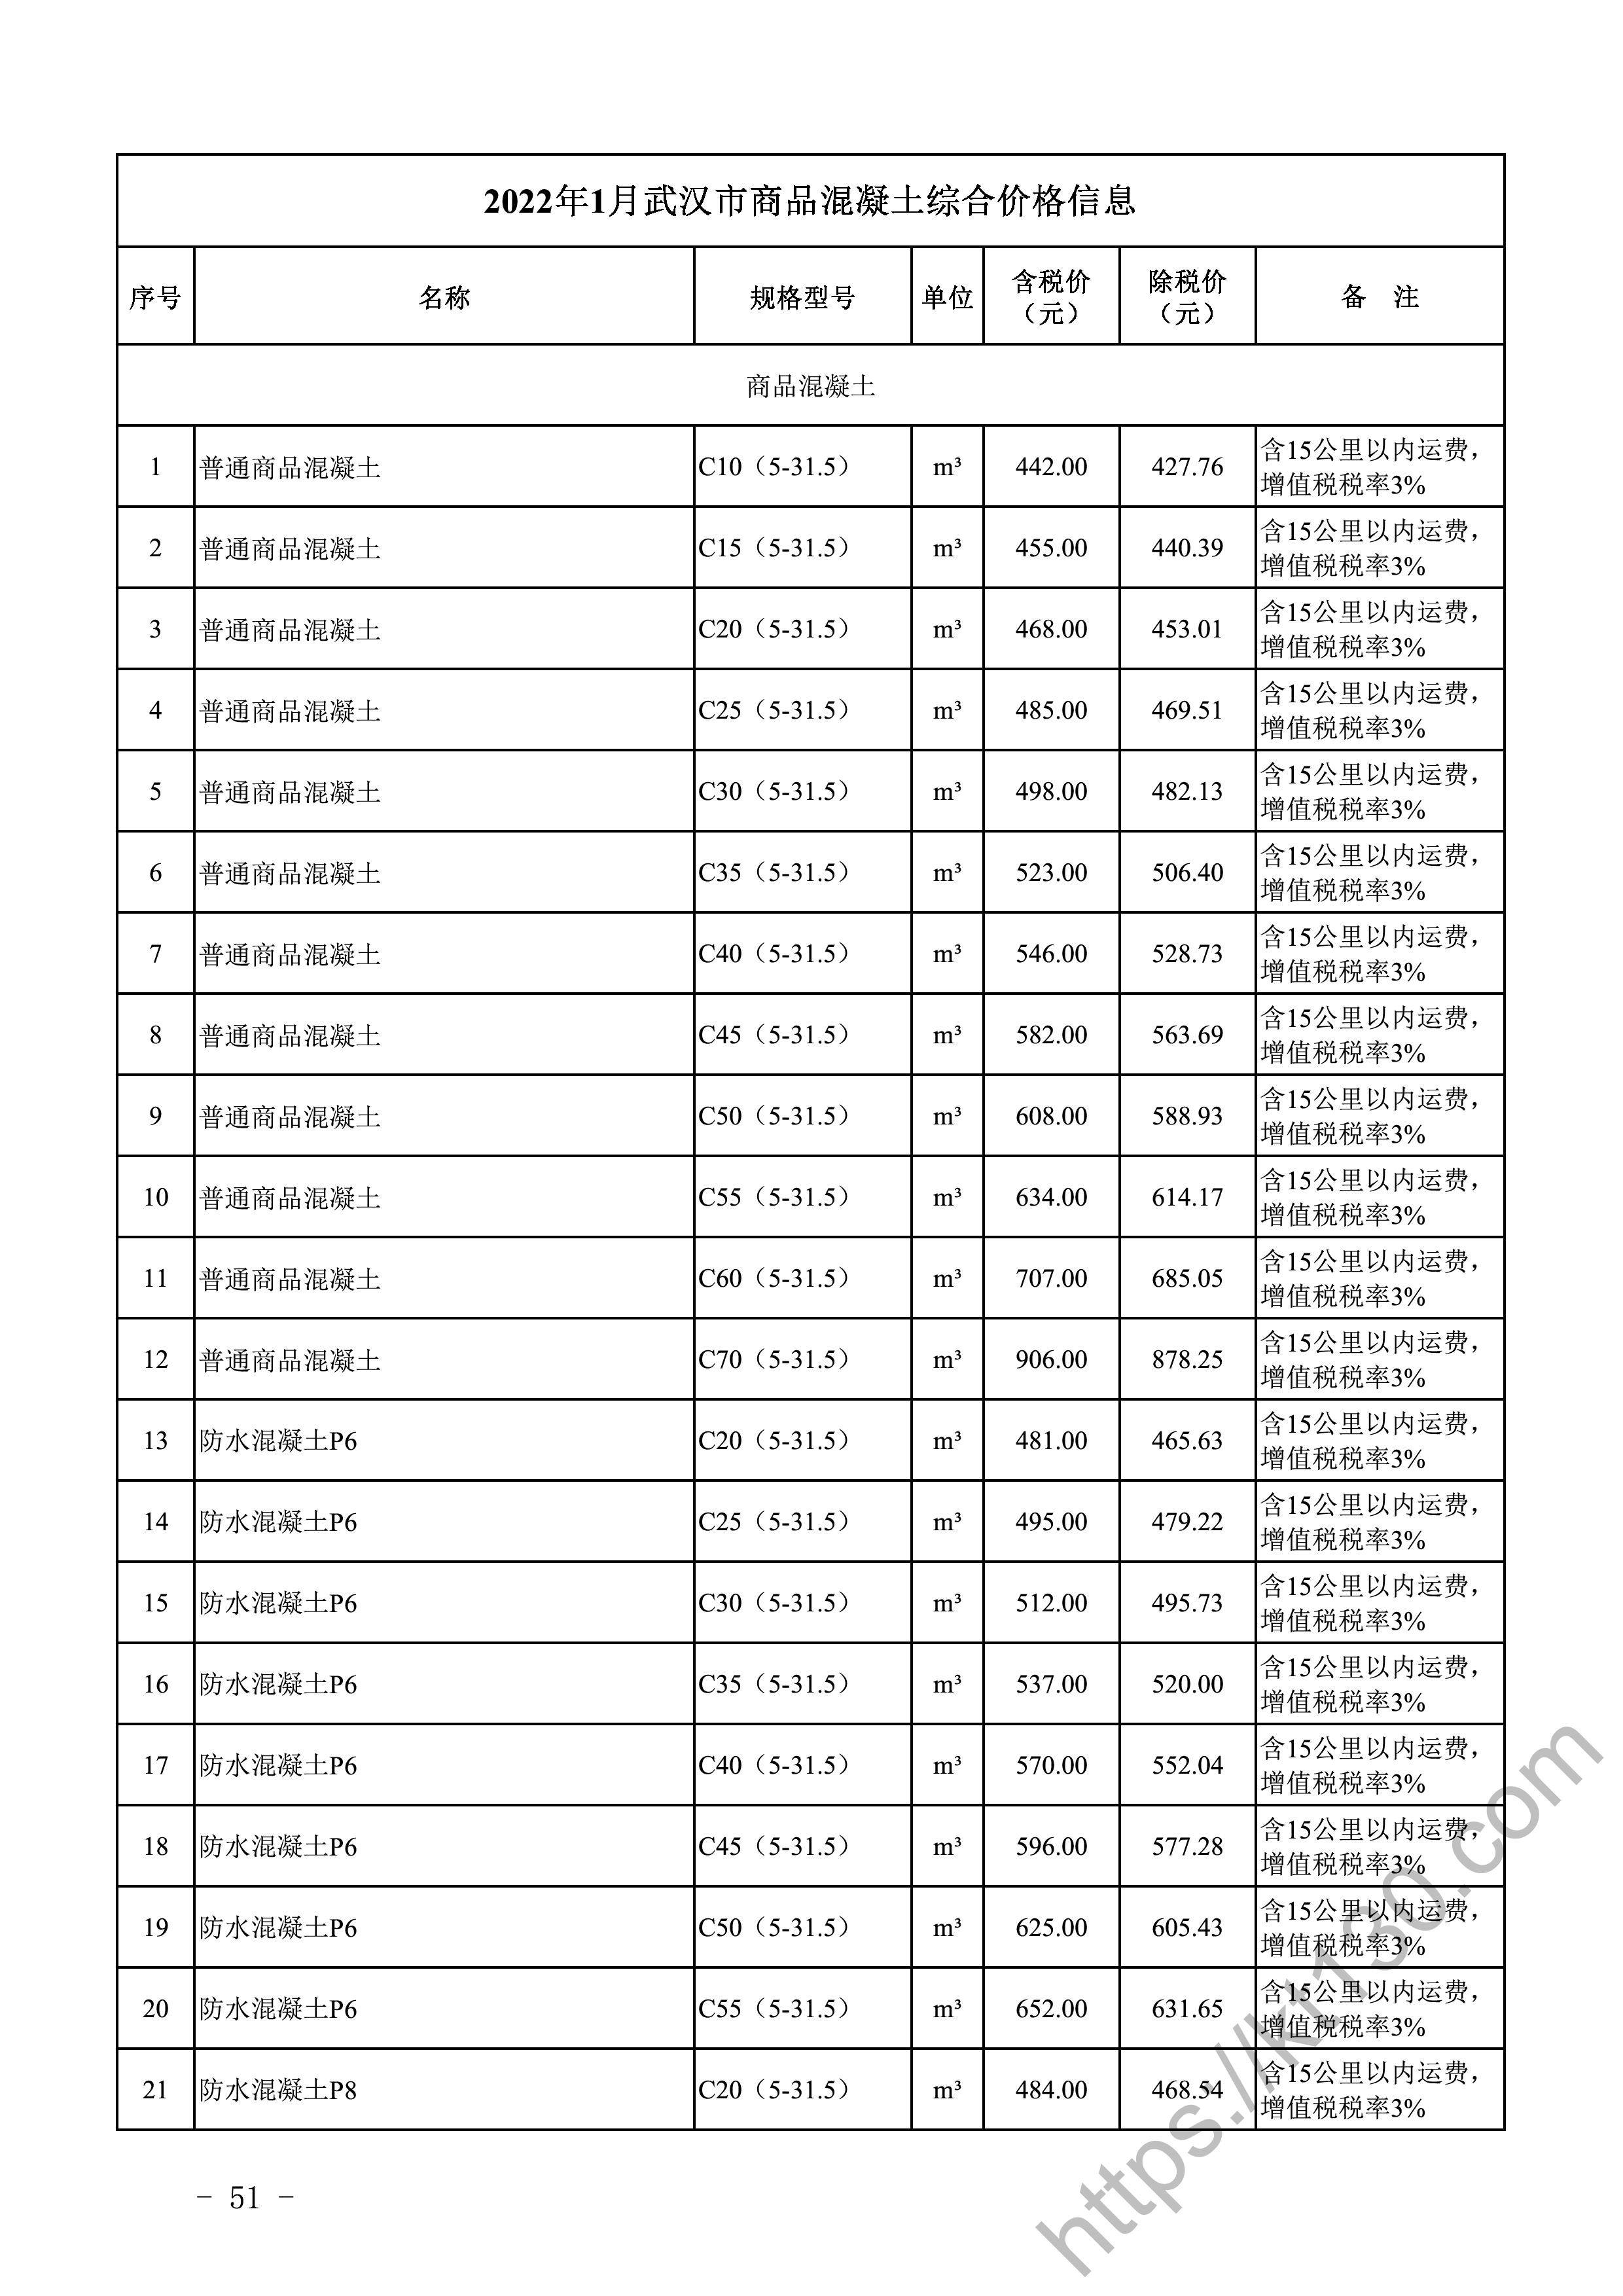 武汉市2022年1月建筑材料价_商品混凝土_45326